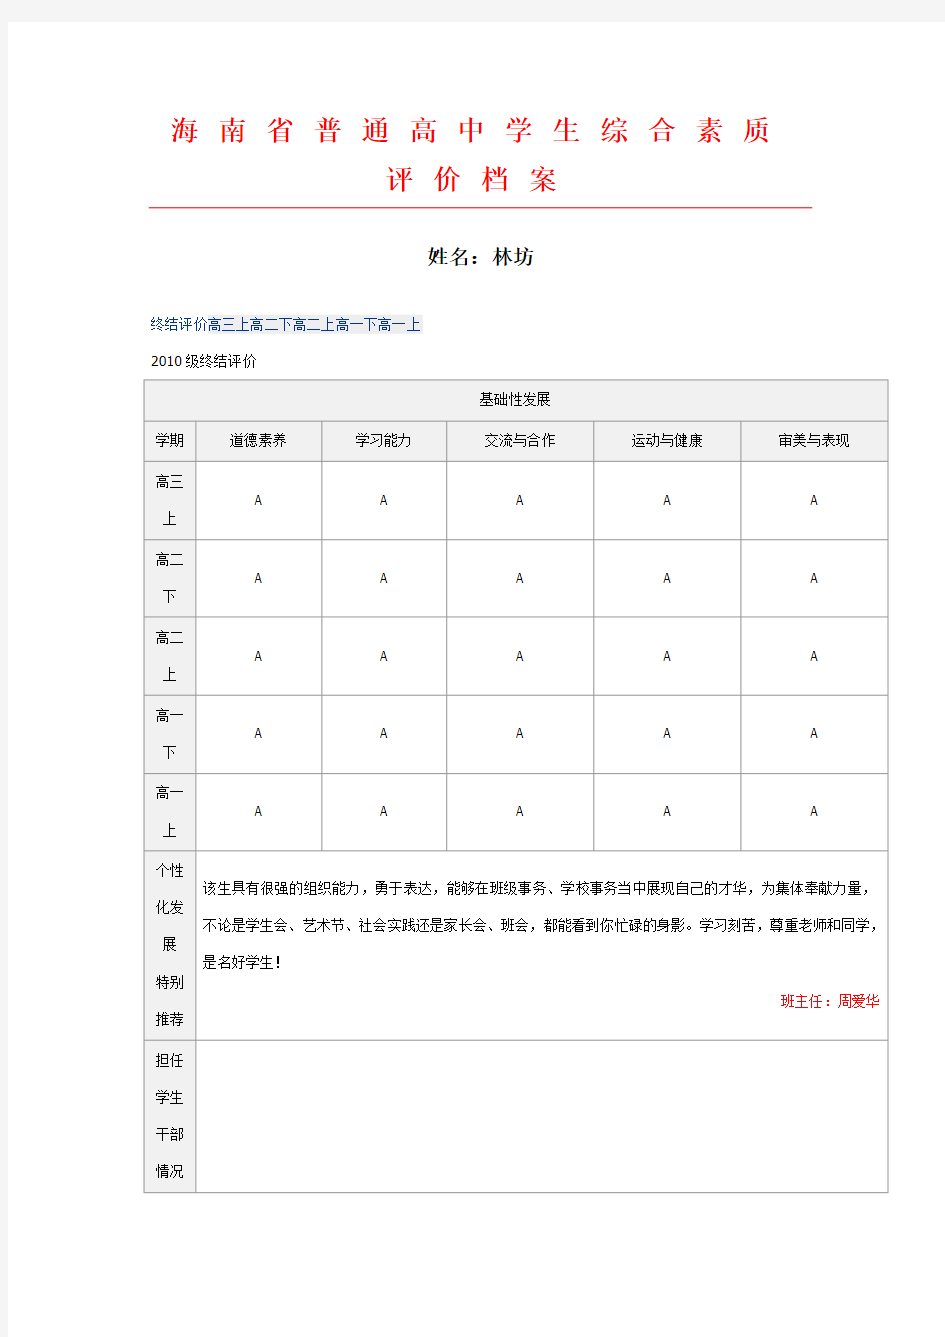 海南省普通高中学生综合素质评价档案